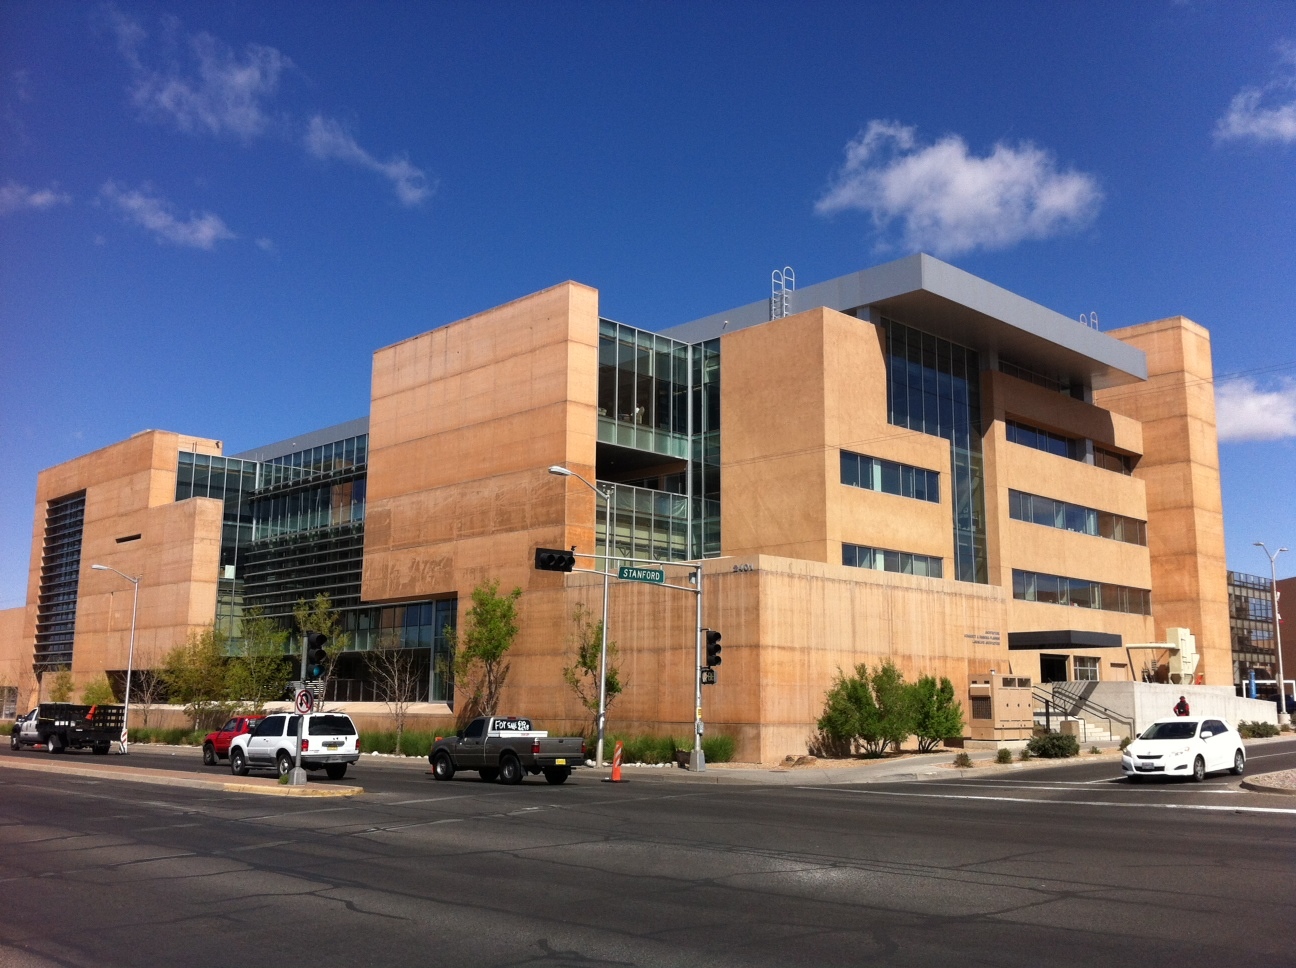 RÃ©sultat de recherche d'images pour "University of New Mexico in Albuquerque photos"